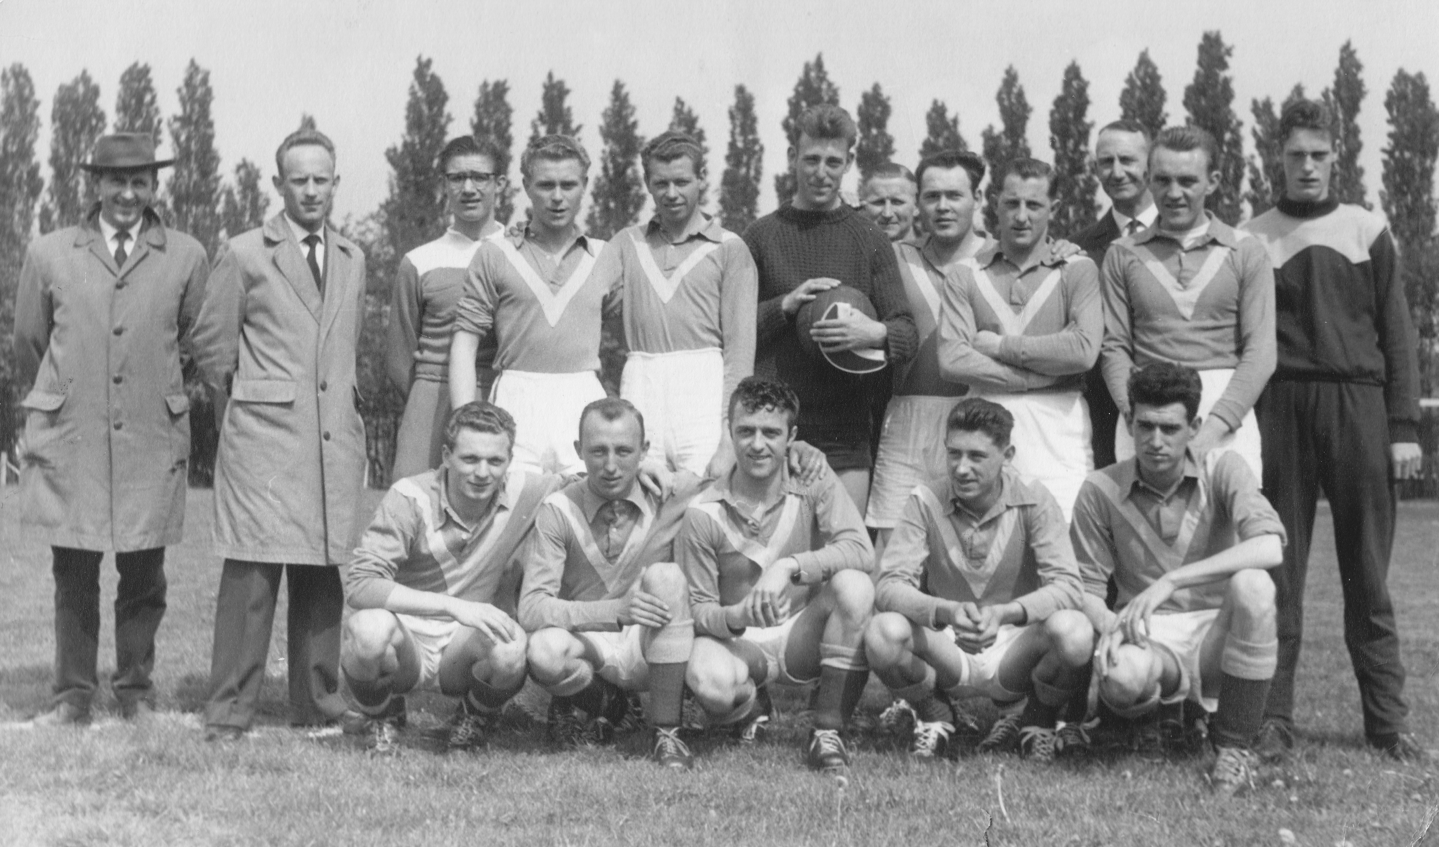 Grenswachters 1 kampioen 1960-1961: Staand v.l.n.r.: Stan Furr (trainer), J. Verswijveren, F. Cloots, Fr. Janssens, R. Verkuijl, L. Hendrickx, G. van de Velde, Fr. Driesen, P. van den Bergh, H. van de Wouwer, A. van Paassen. Zittend v.l.n.r.: B. Lambrechts, Fr. van Beeck, R. Verrest, L. van Tilborgh, C. van Beeck.